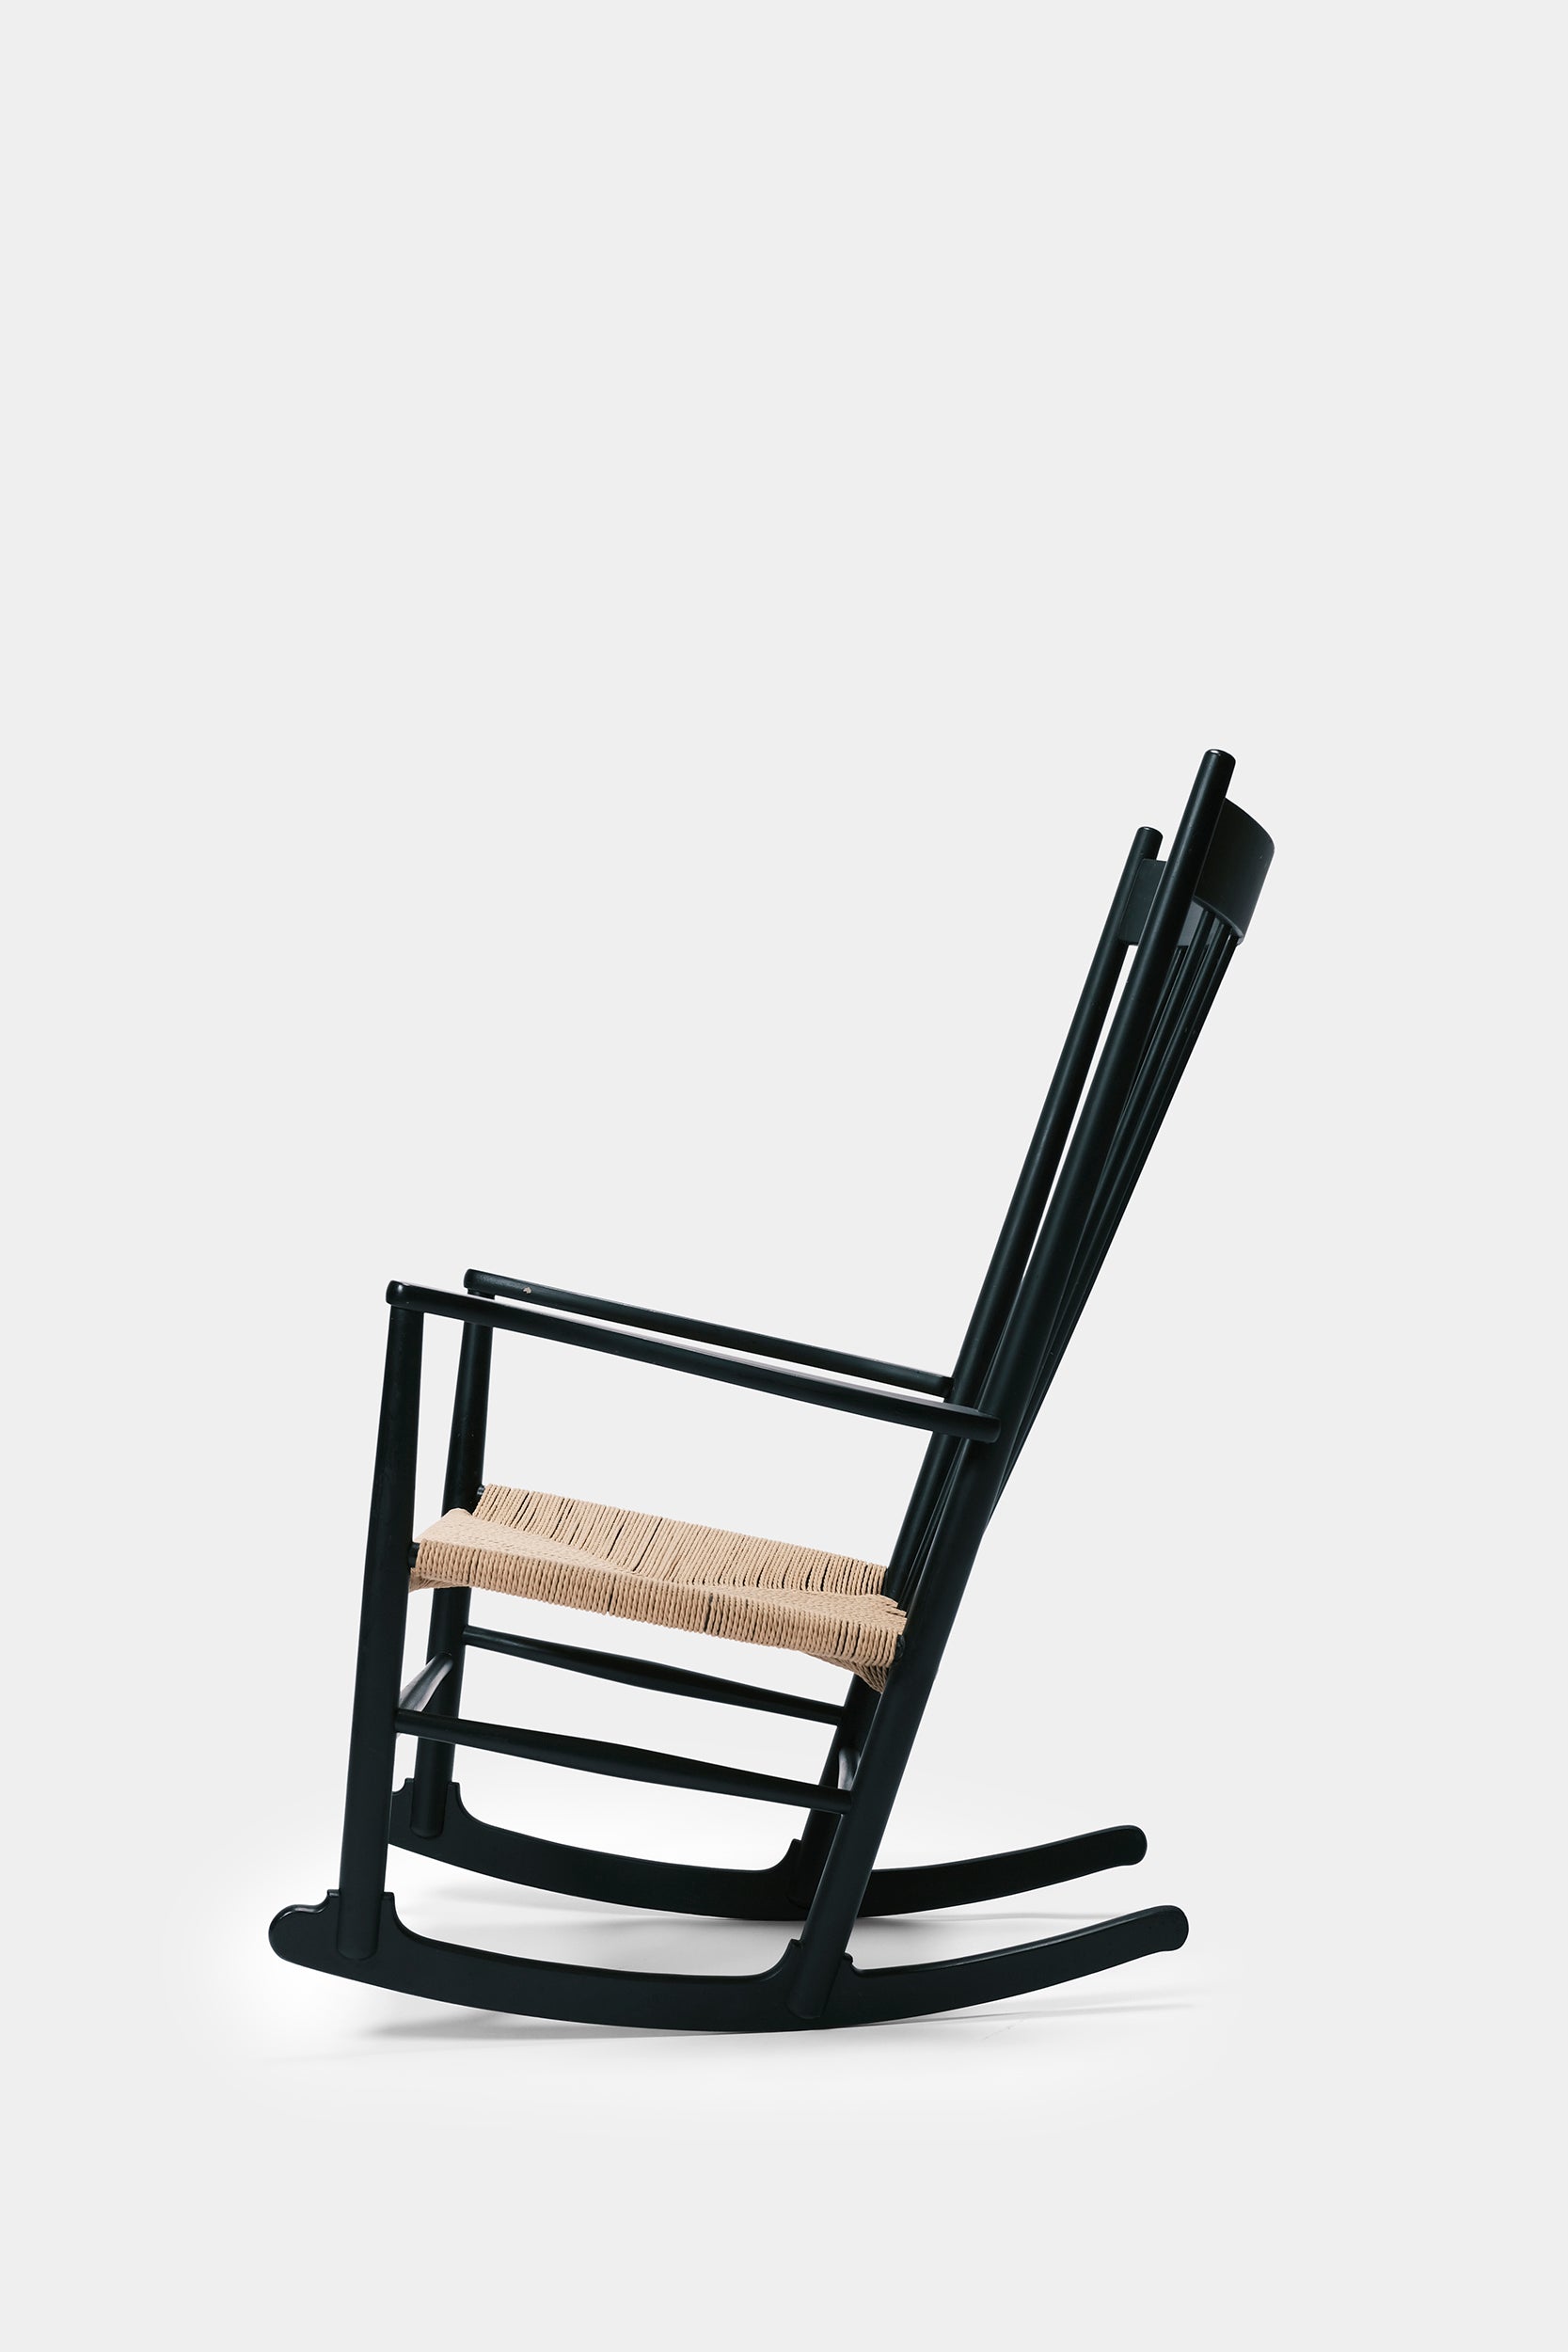 Hans Wegner J16 rocking chair Denmark 40s